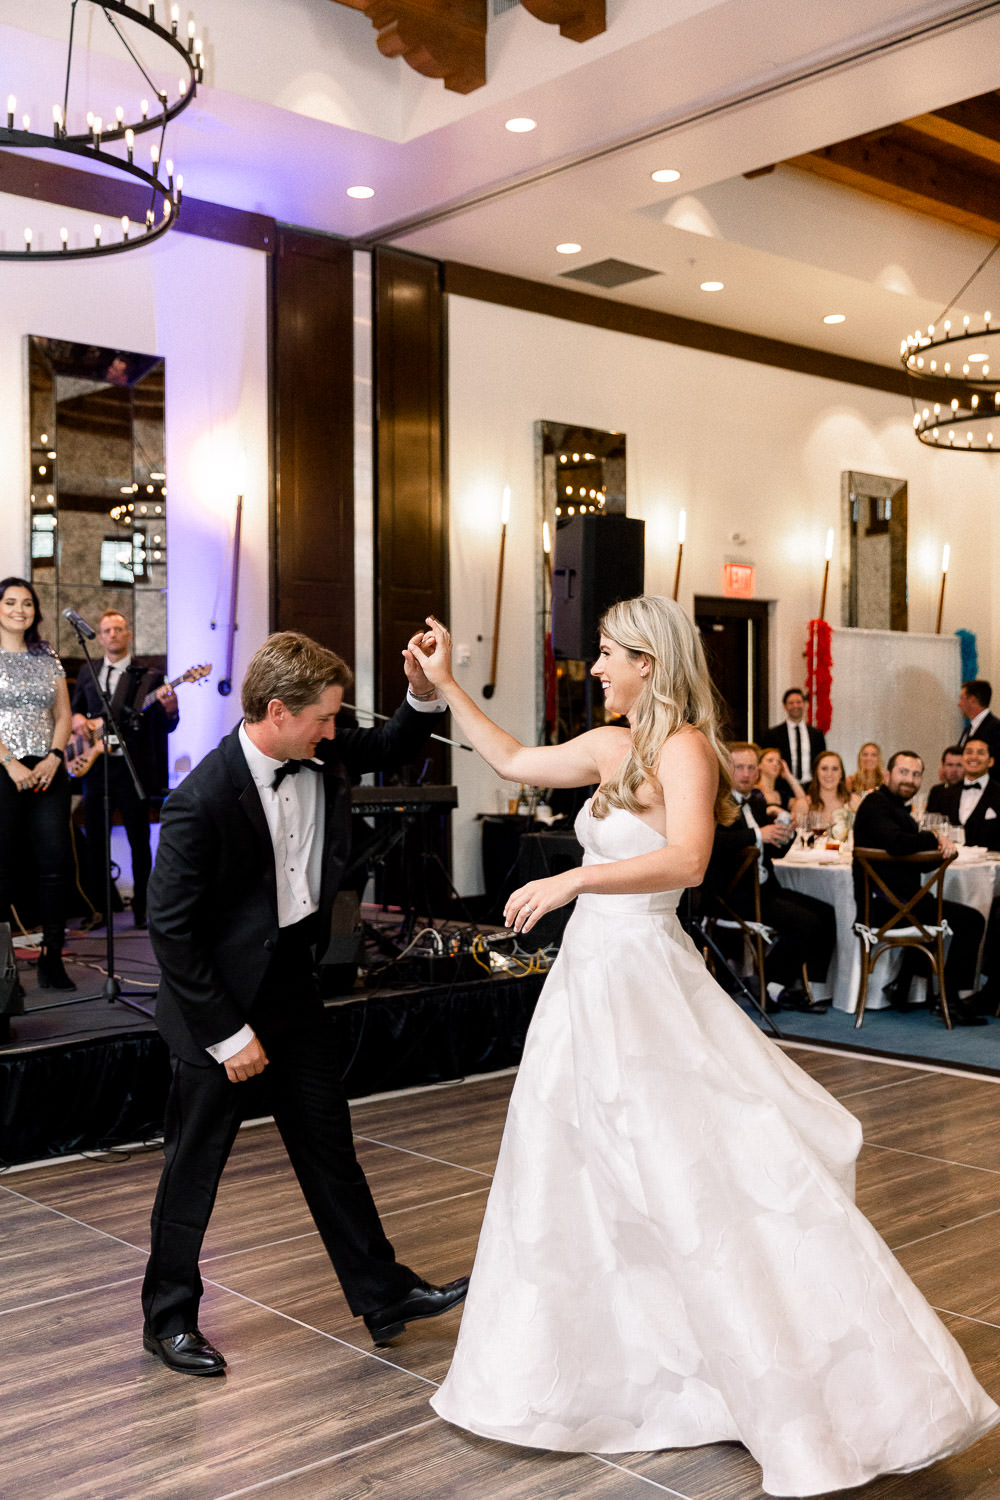 Groom spins bride around during their first dance.